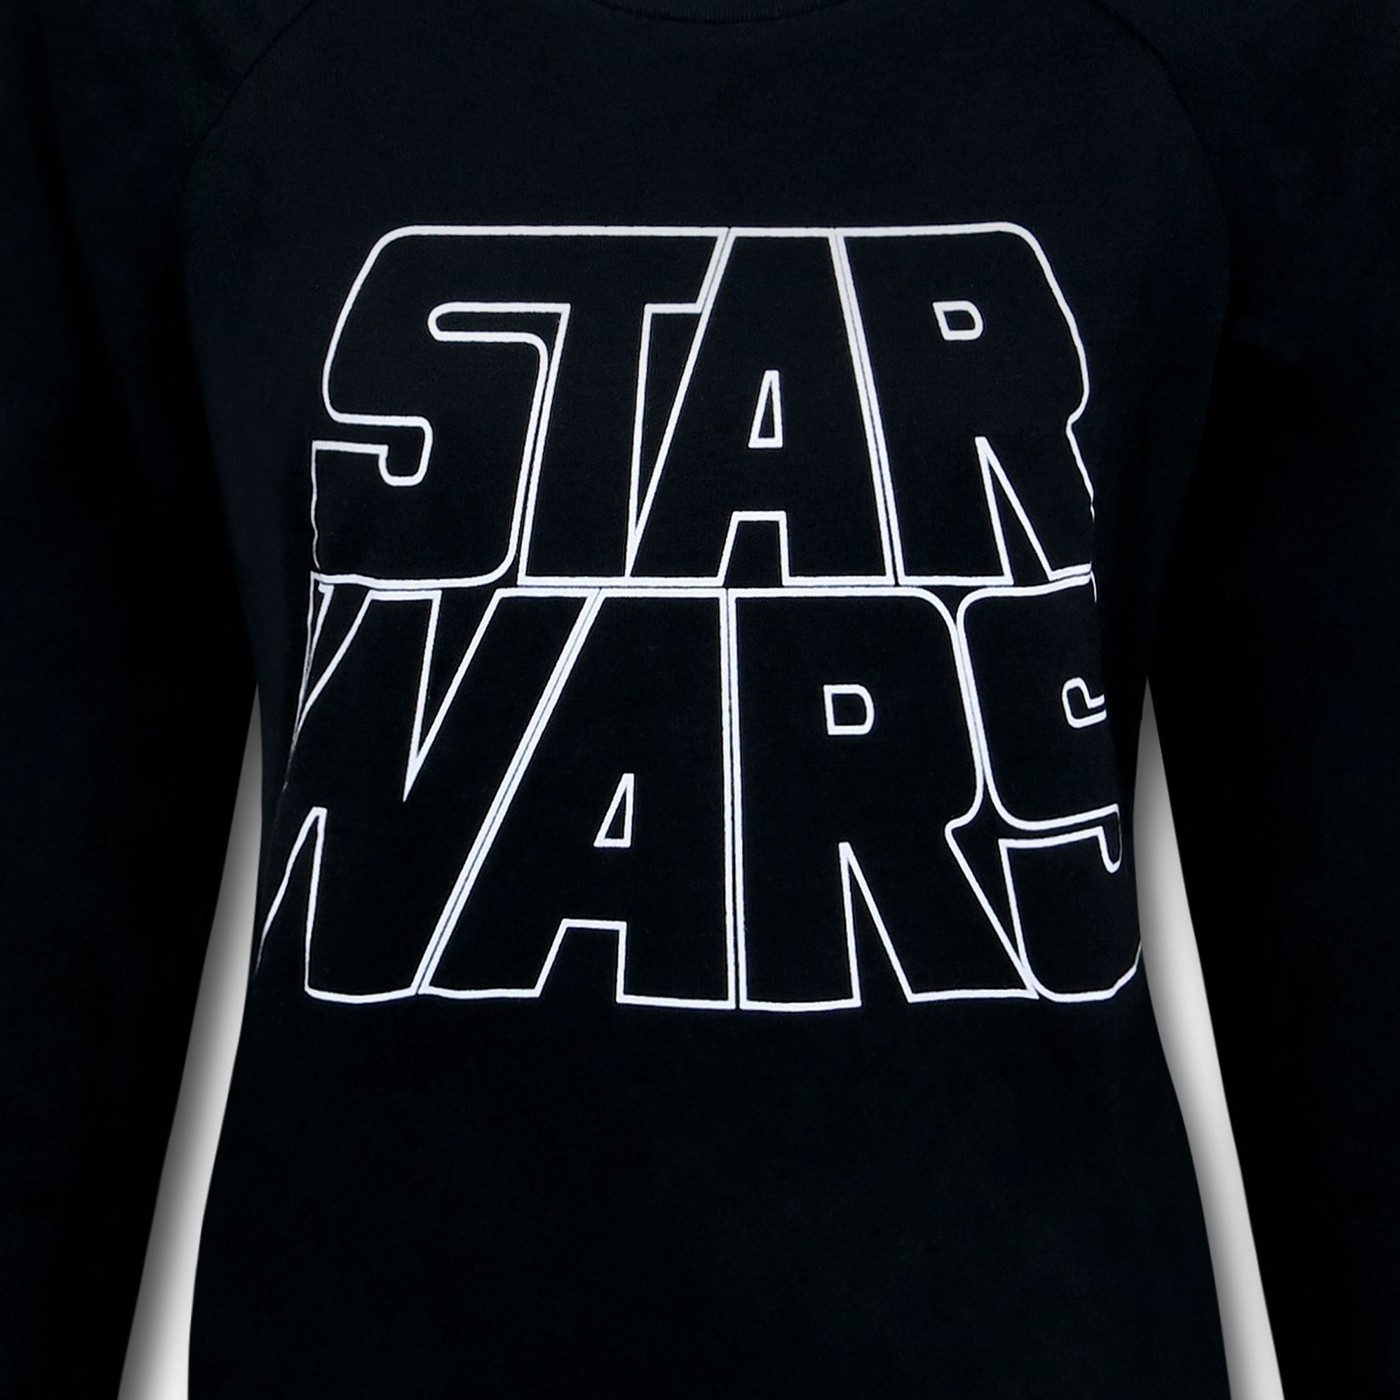 Star Wars Logo Women's Sweatshirt